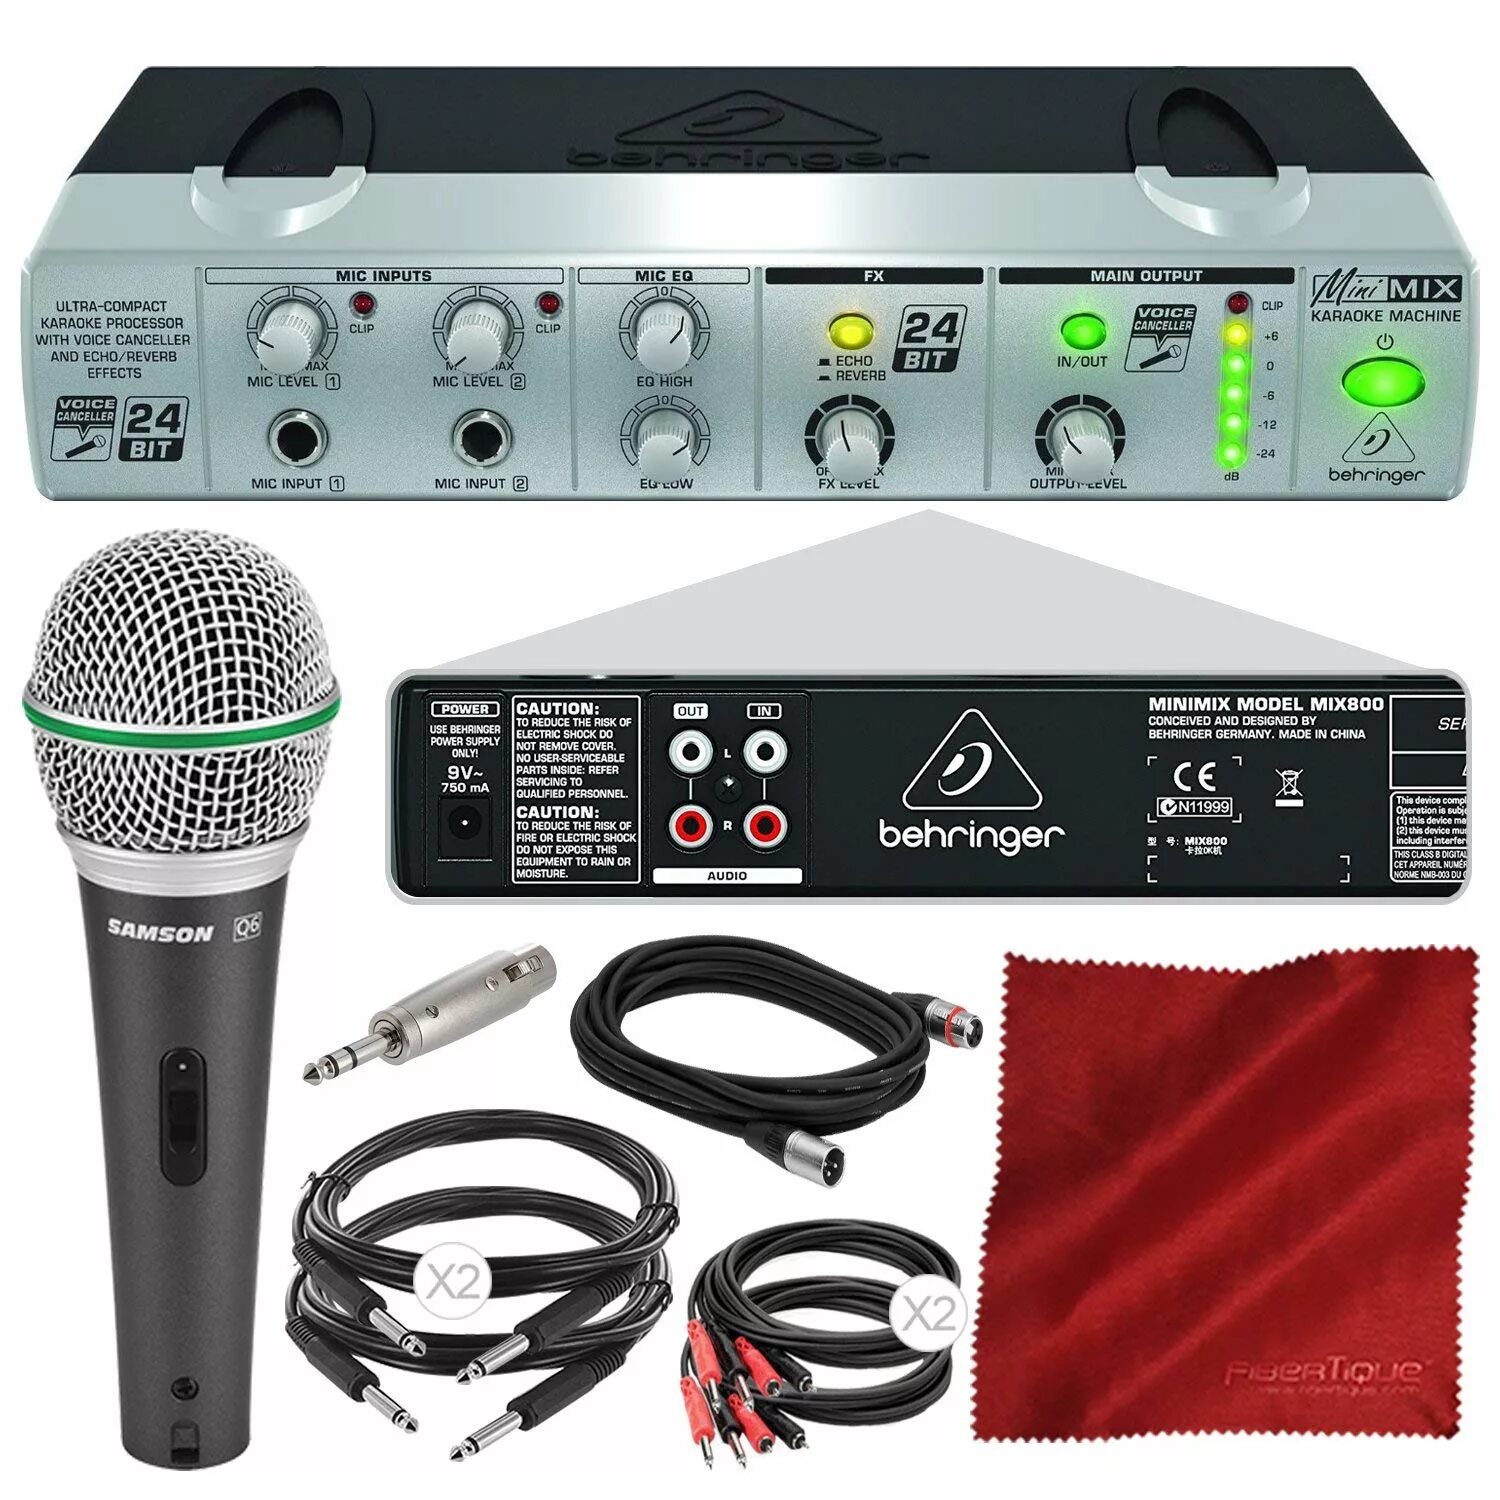 Микрофон Behringer с-4. Behringer Minimix mix800 Ultra-Compact Karaoke Machine with Voice Canceller and FX. Микрофон парный Behringer. EW-800 караоке. Караоке система для дома с двумя